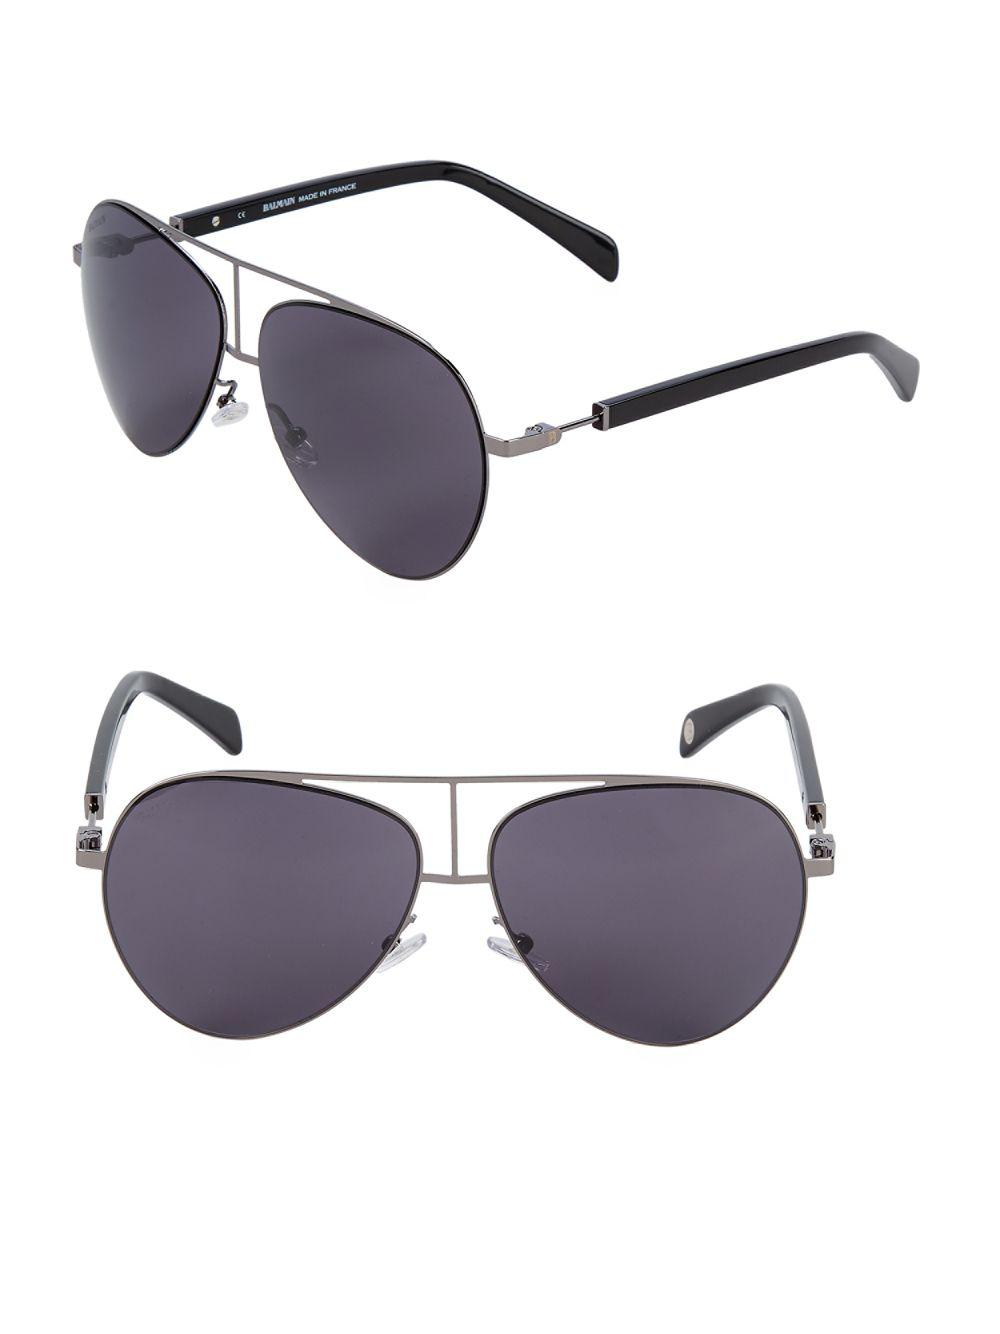 Balmain 59mm Aviator Sunglasses for Men - Lyst